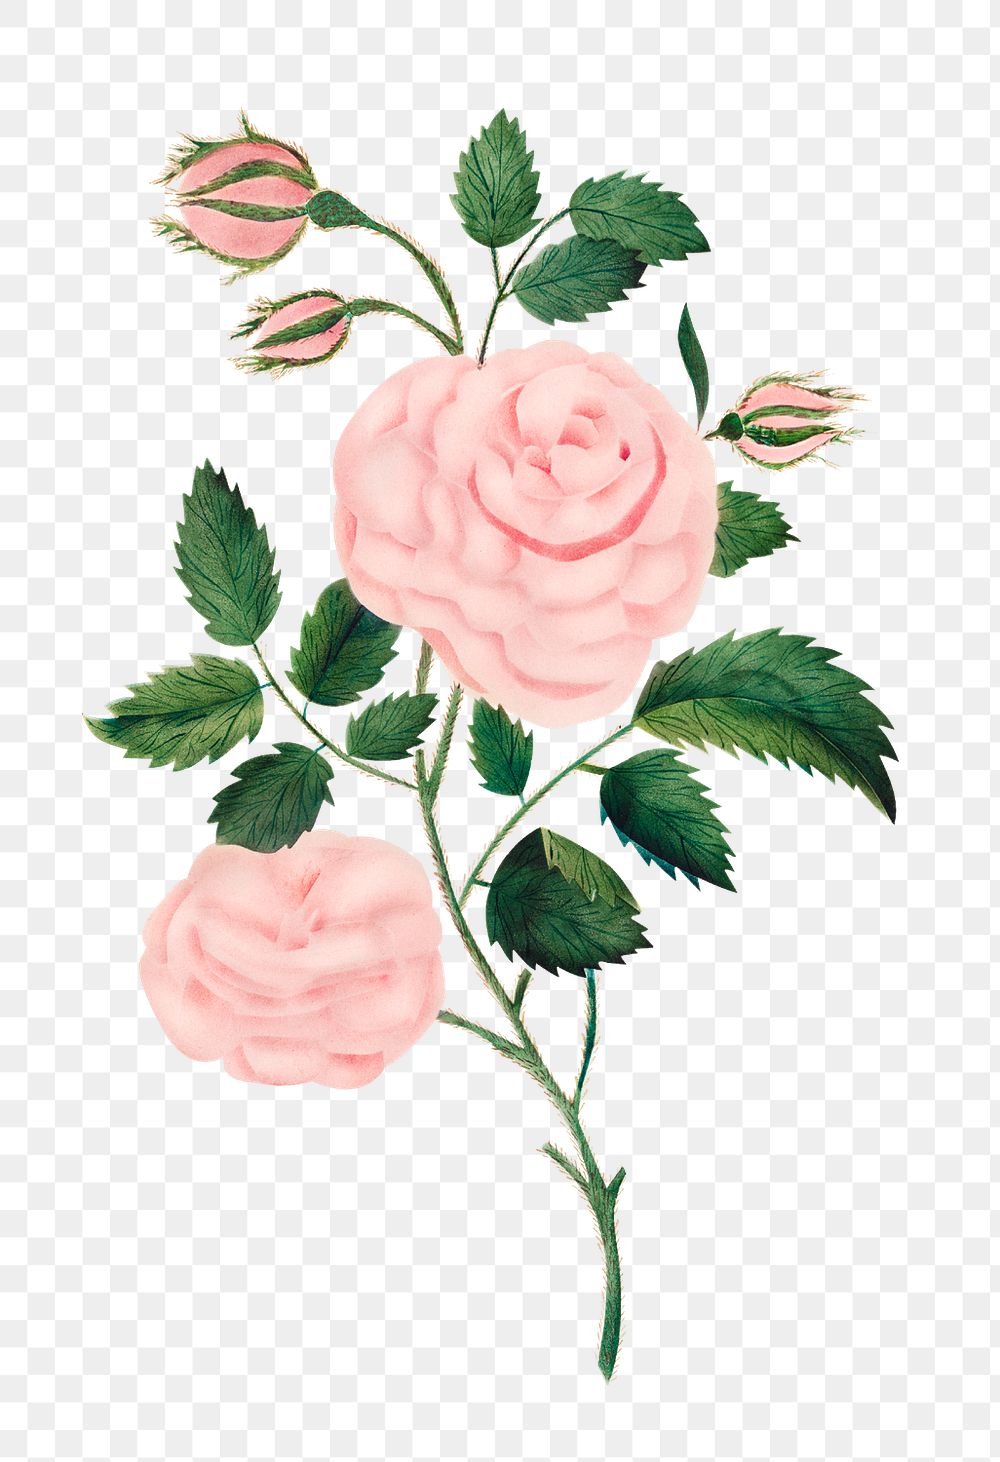 Damask rose vintage illustration transparent | Premium PNG Sticker ...